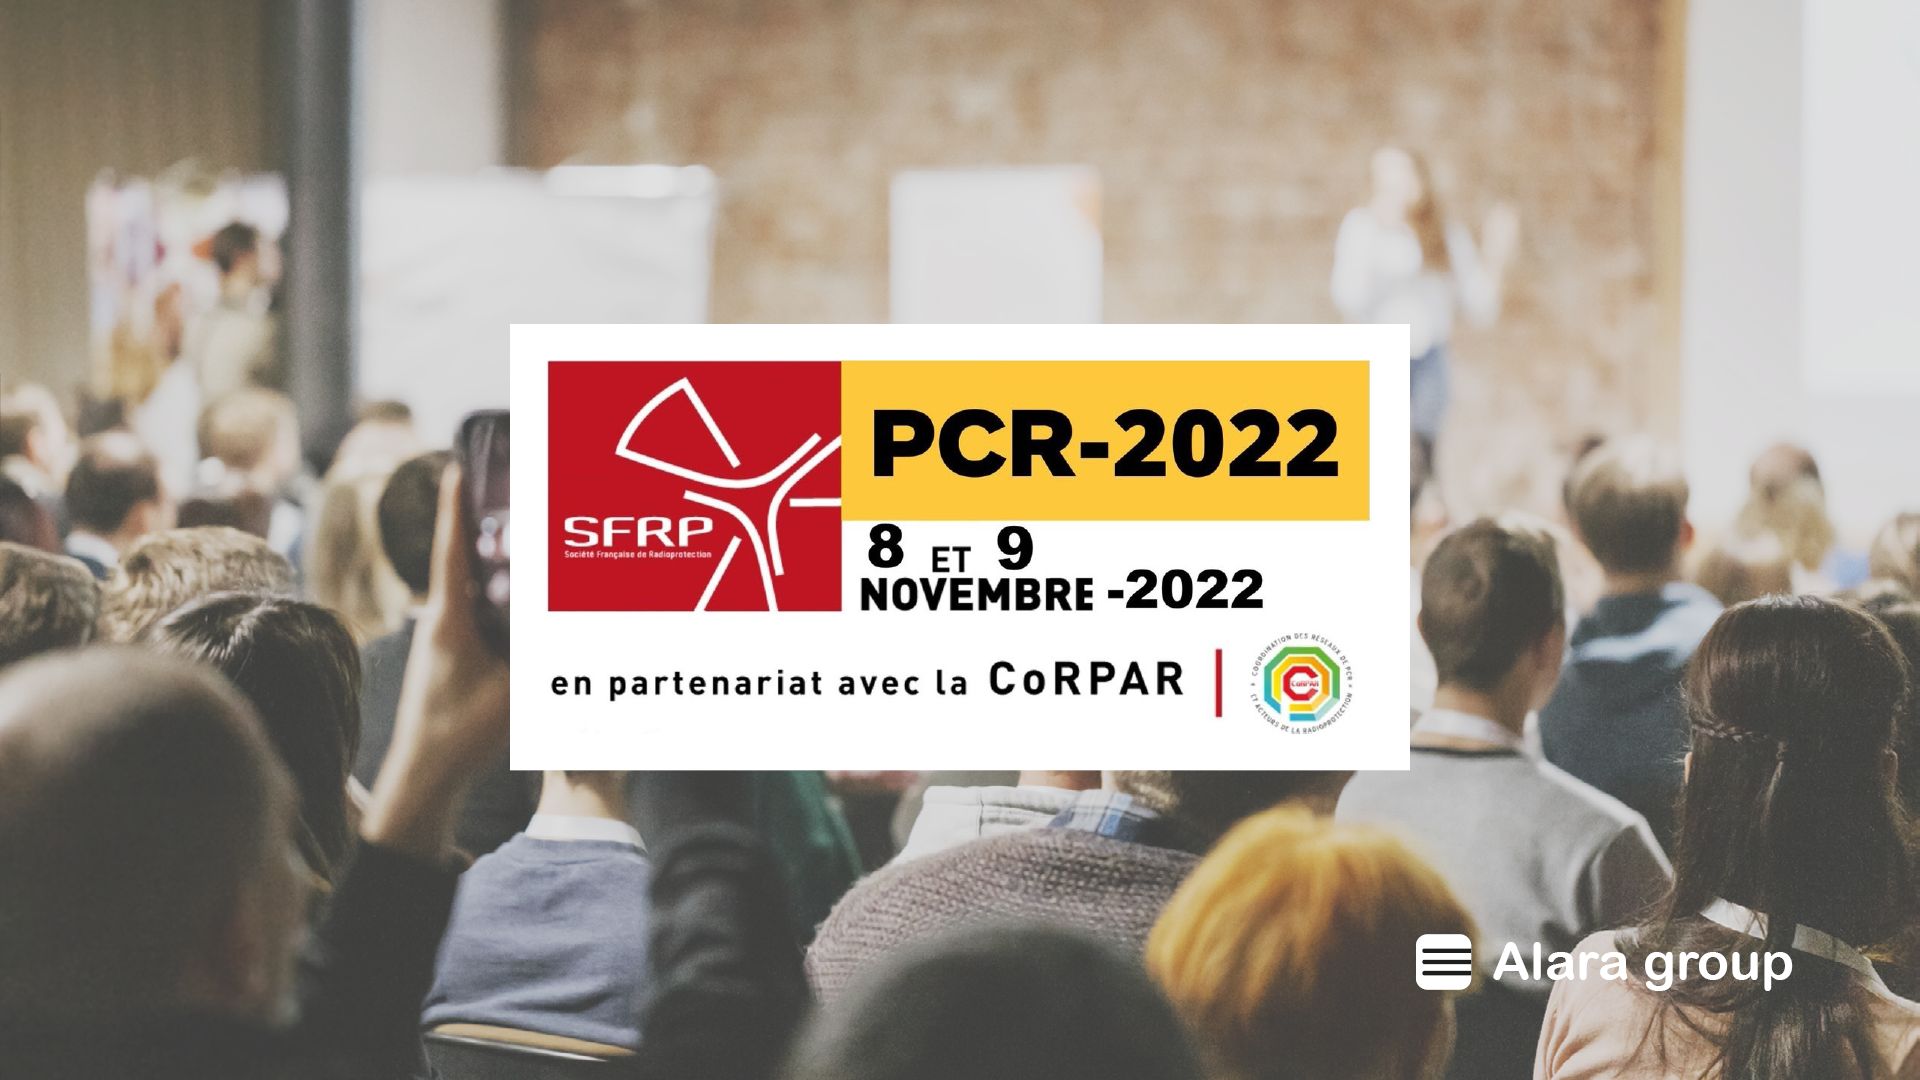 [EVENT] SFRP 2022 – Treffen der Befähigten Personen im Strahlenschutz